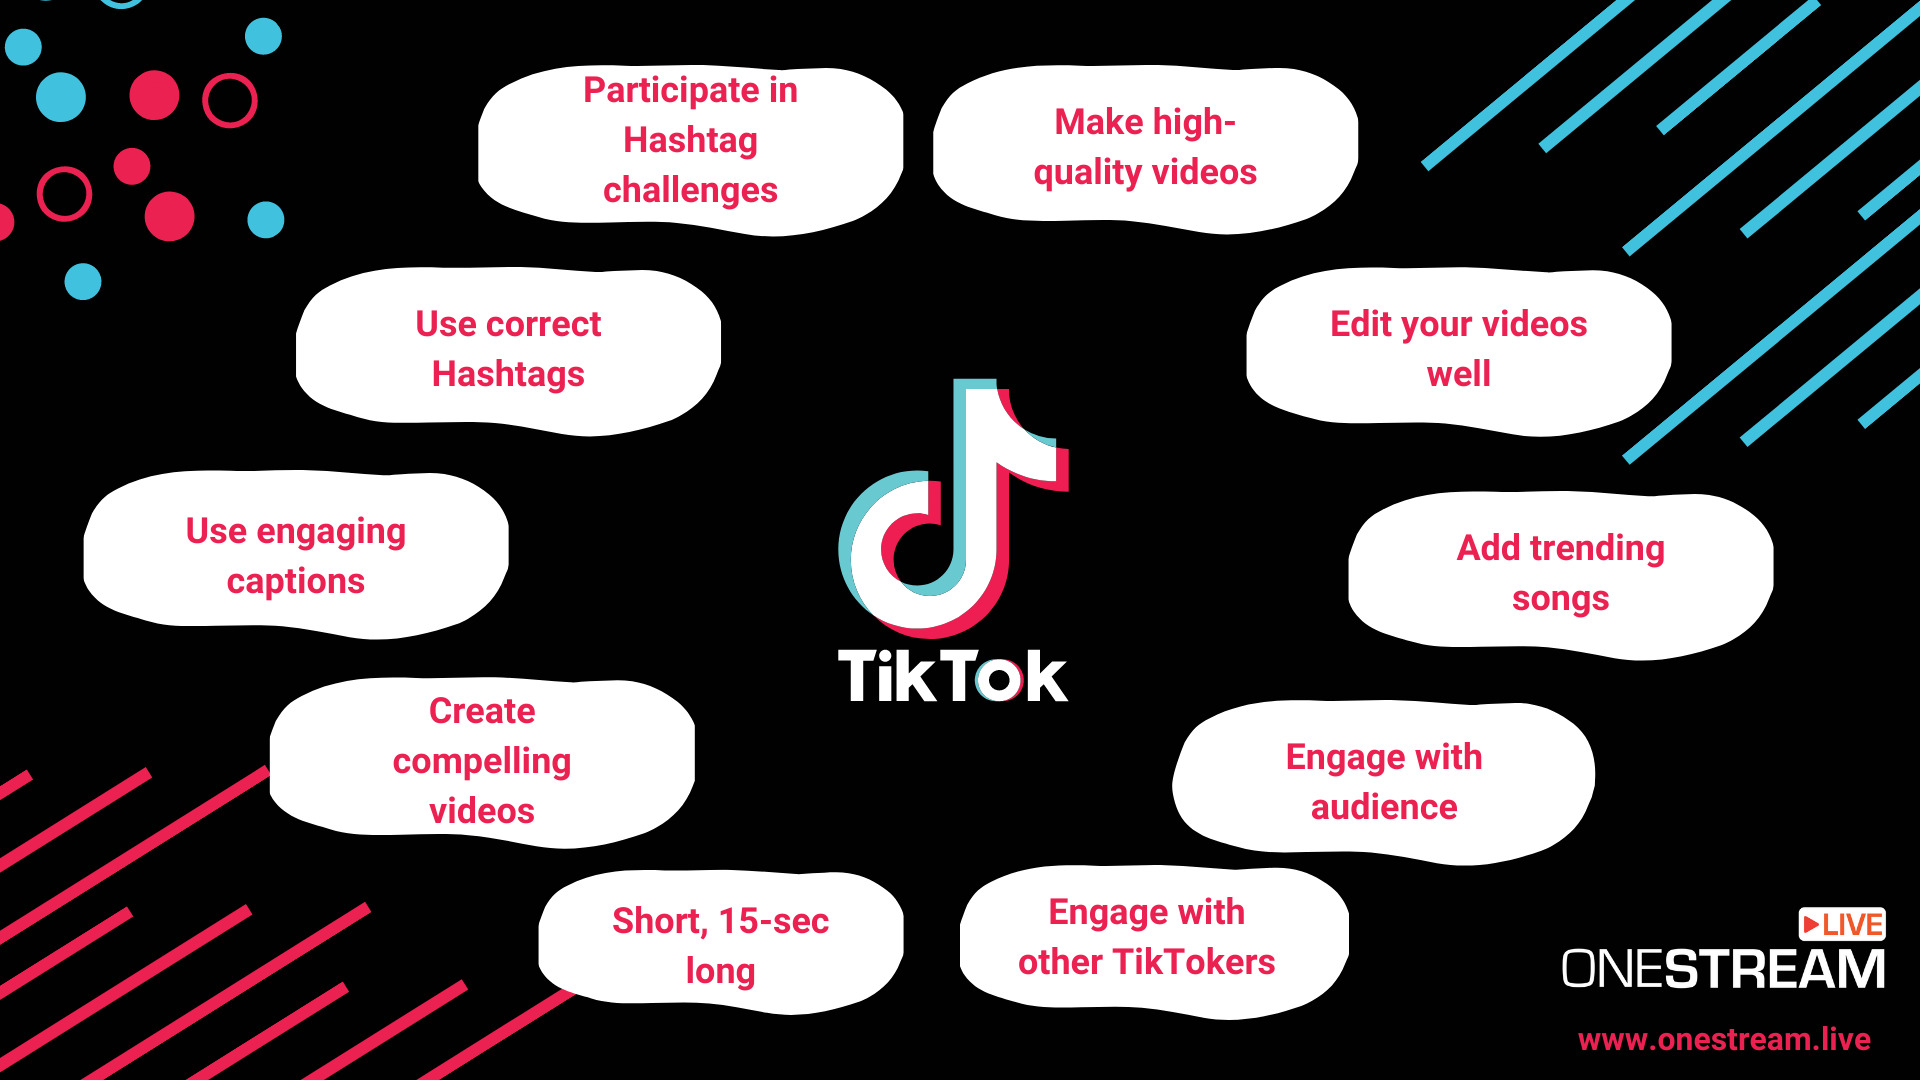 Tips for trending TikTok videos